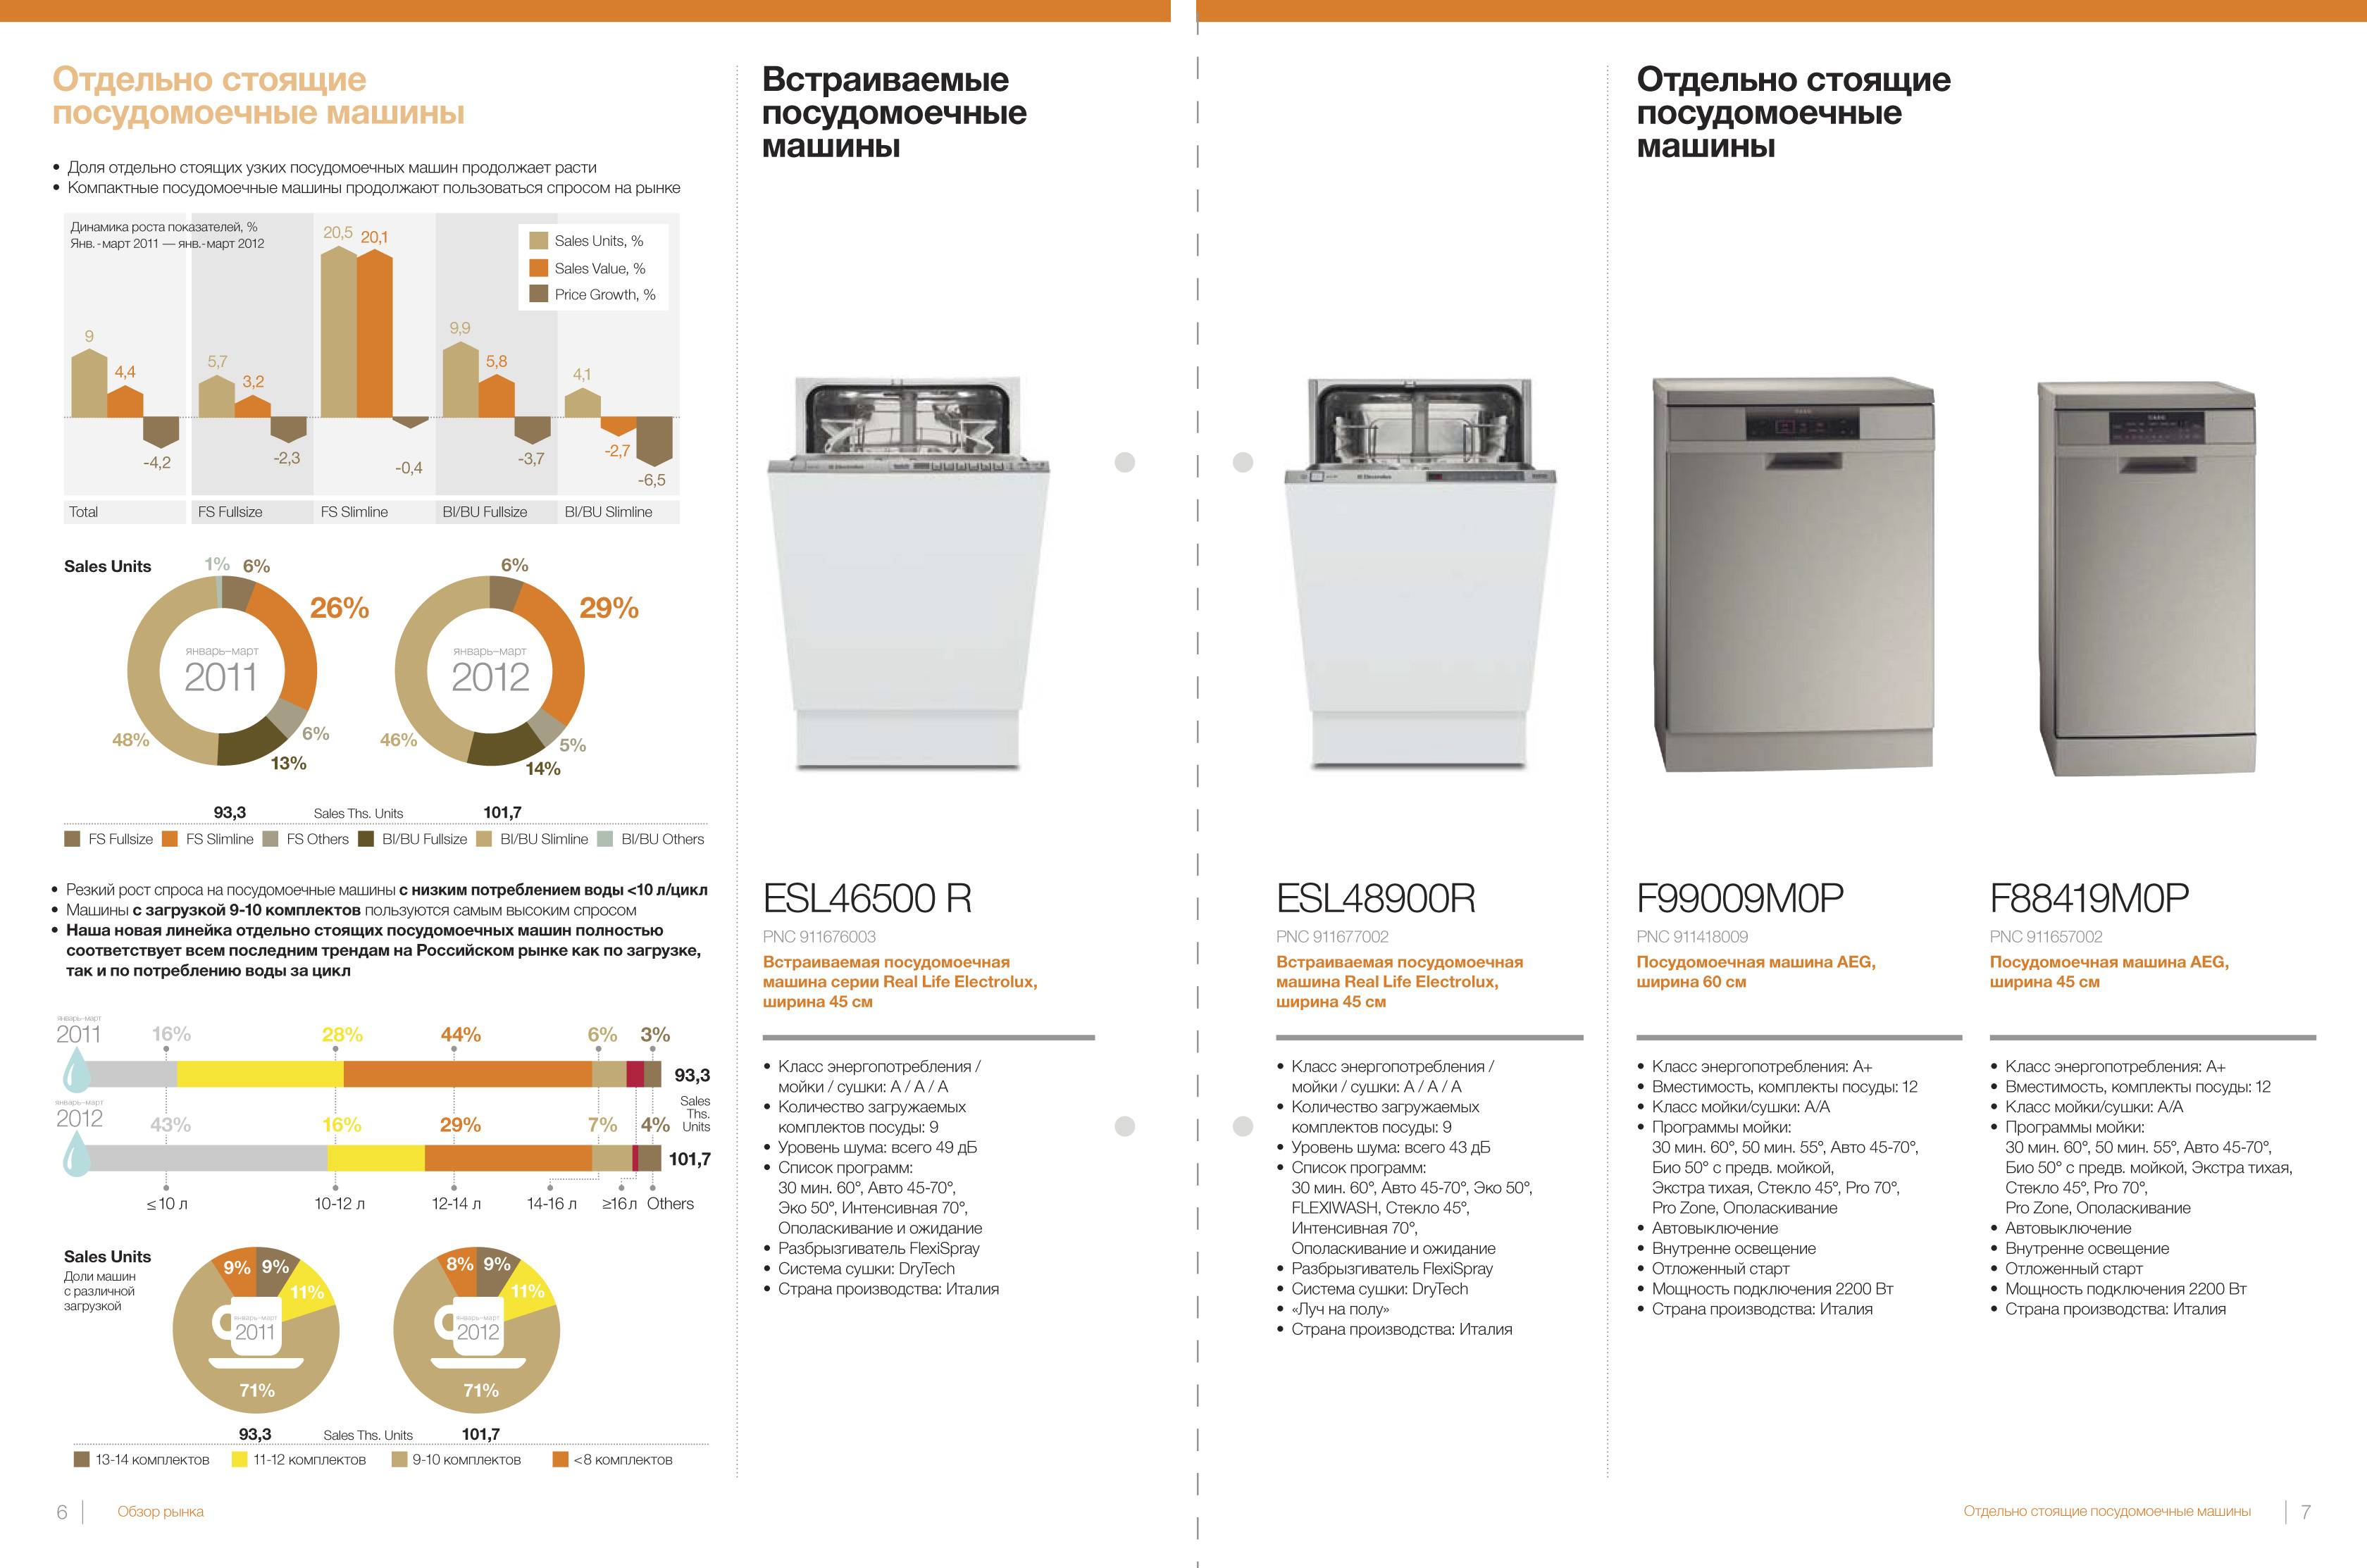 Мощность посудомоечной машины: сколько потребляет, в квт, bosch, энергопотребление, какая